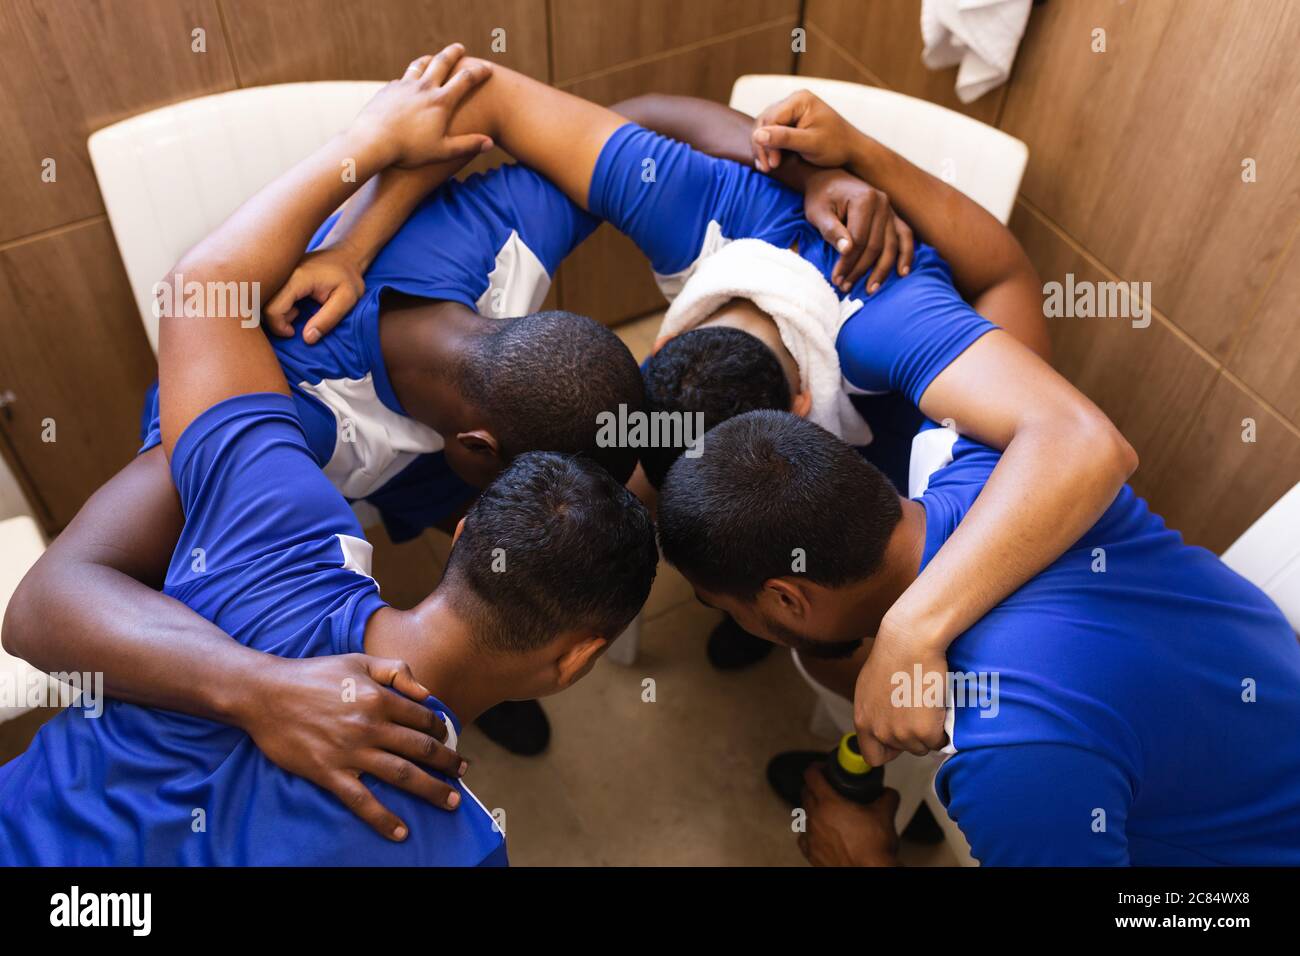 Groupe multiethnique de joueurs de football masculins portant une bande d'équipe dans le vestiaire pendant une pause dans le jeu, debout dans le caucus se motivant mutuellement. Banque D'Images